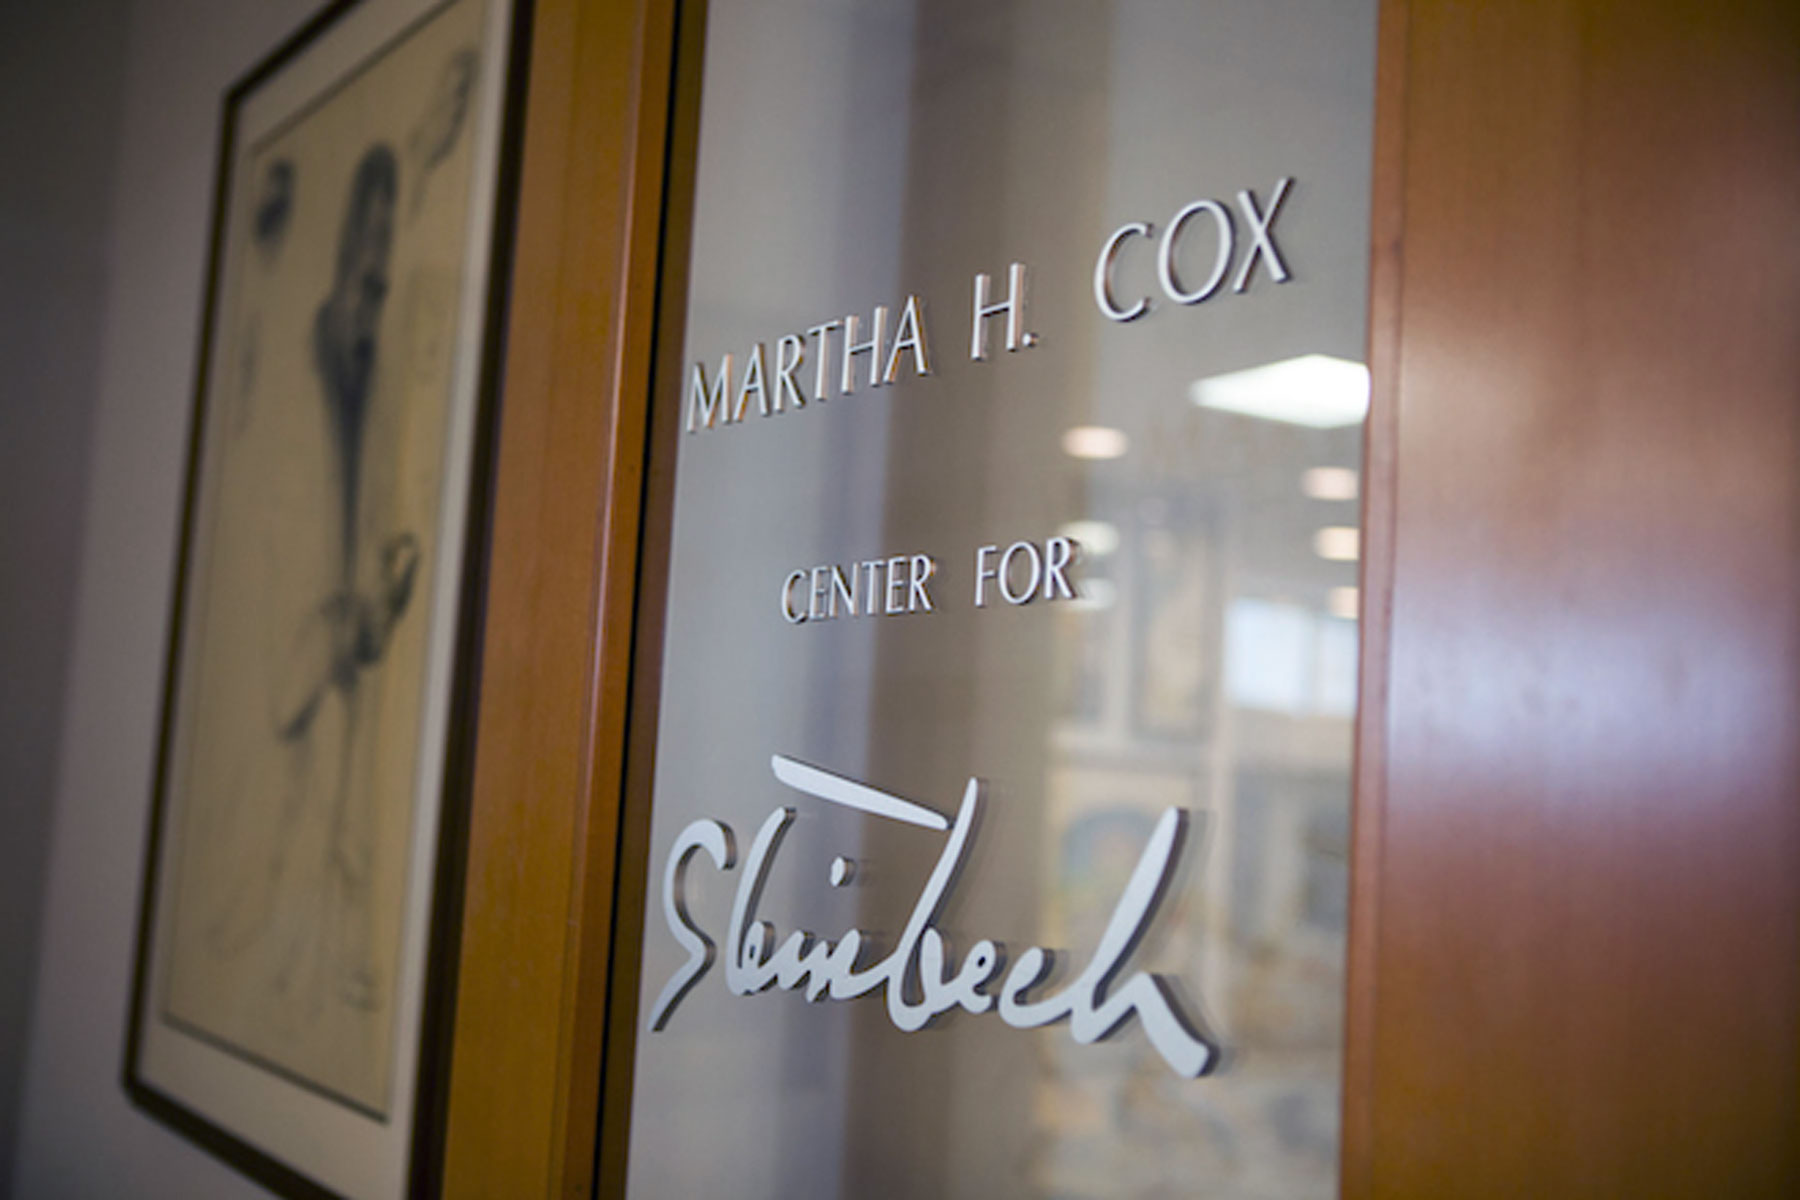 Martha Heasley Cox Center for Steinbeck Studies.